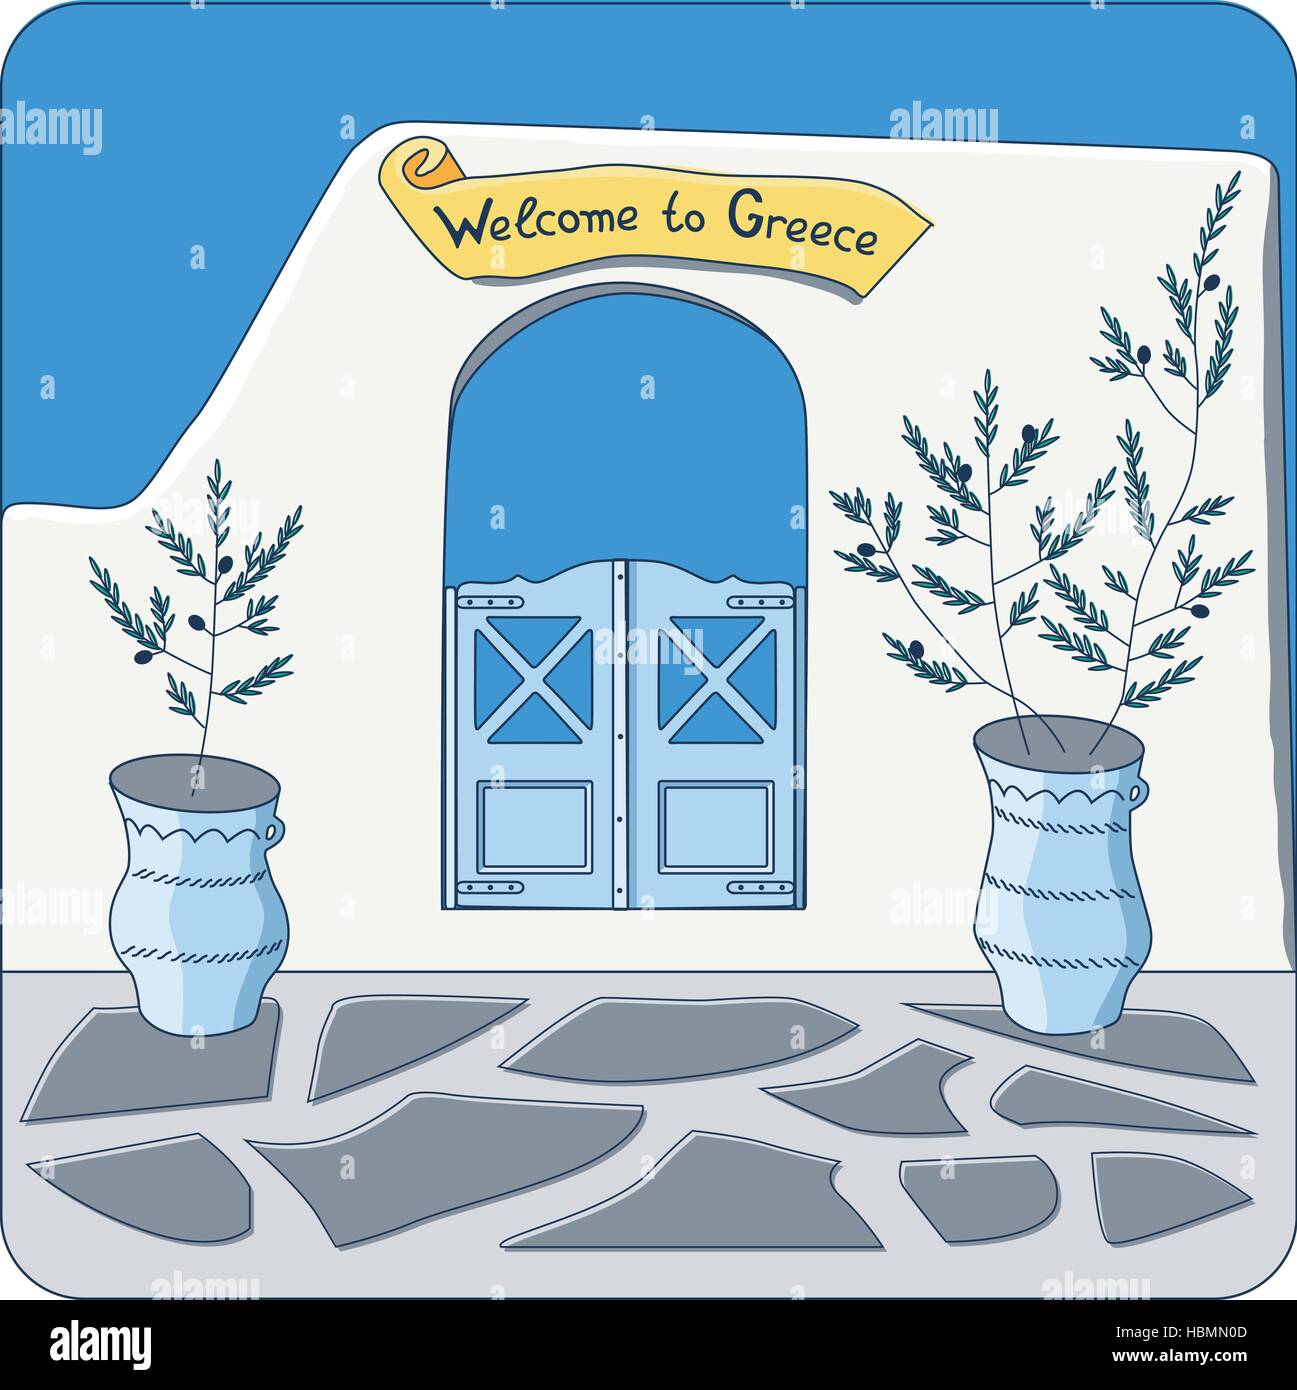 Blauen Tor in der Mauer mit "Willkommen in Griechenland" Einladung und Olivenbäumen in den Töpfen-Vektor-illustration Stock Vektor